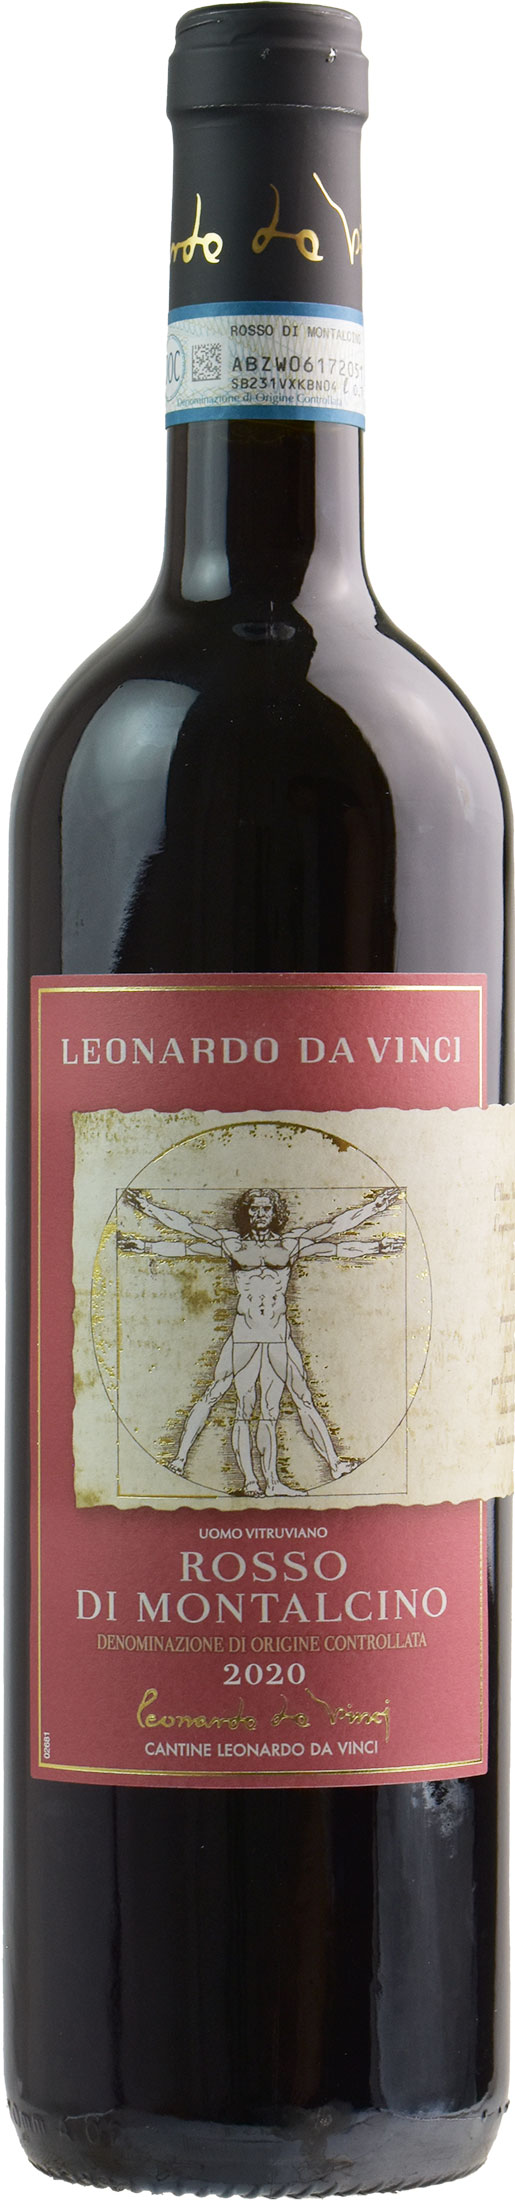 Leonardo da Vinci Vitruviano Rosso